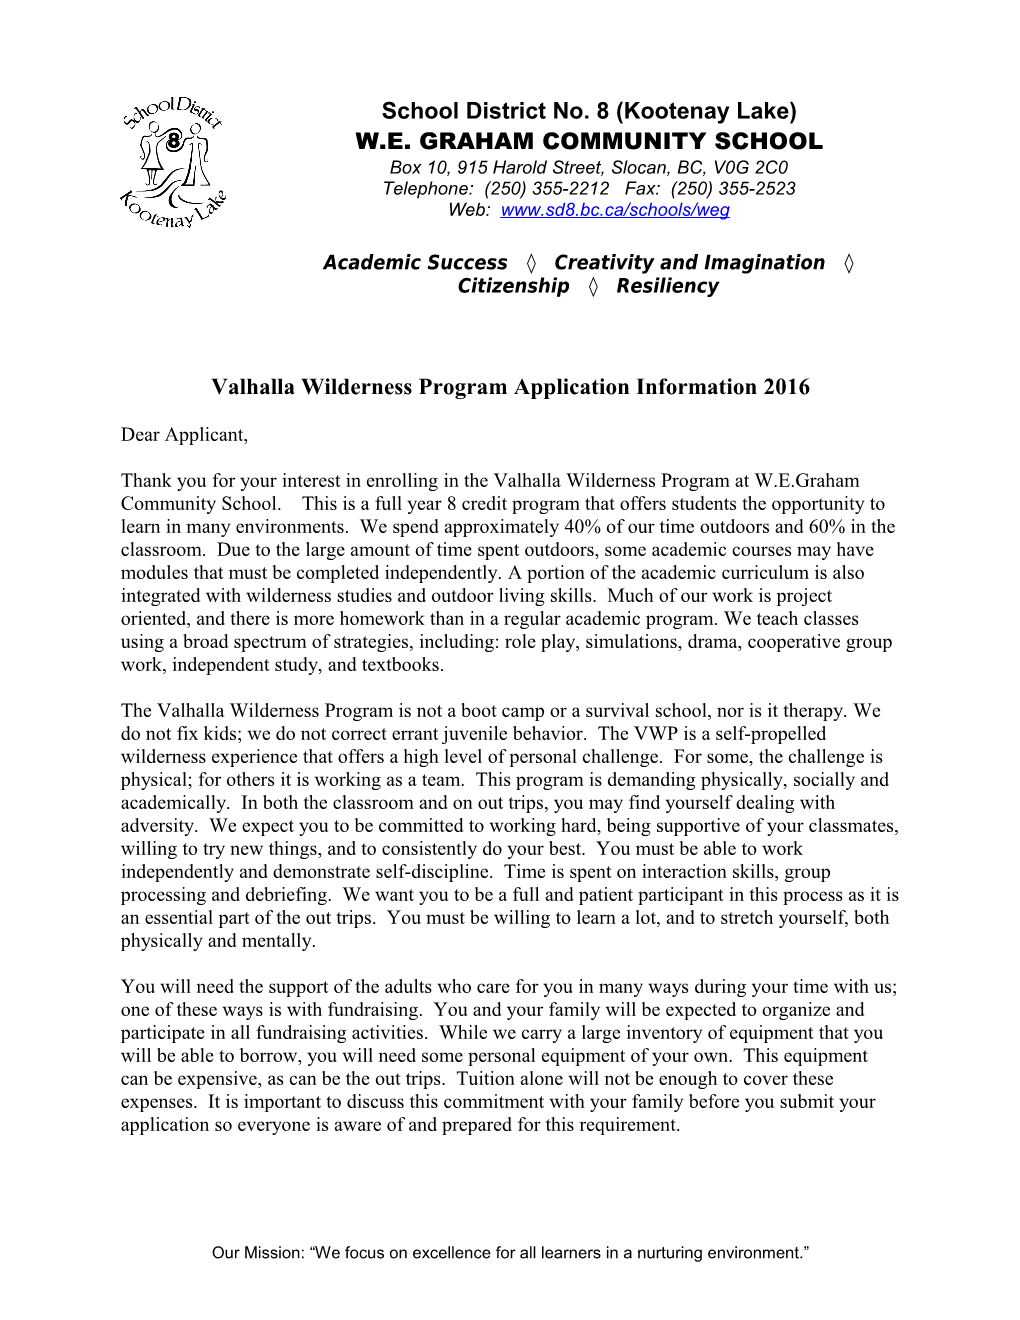 Valhalla Wilderness Program Application Information 2016